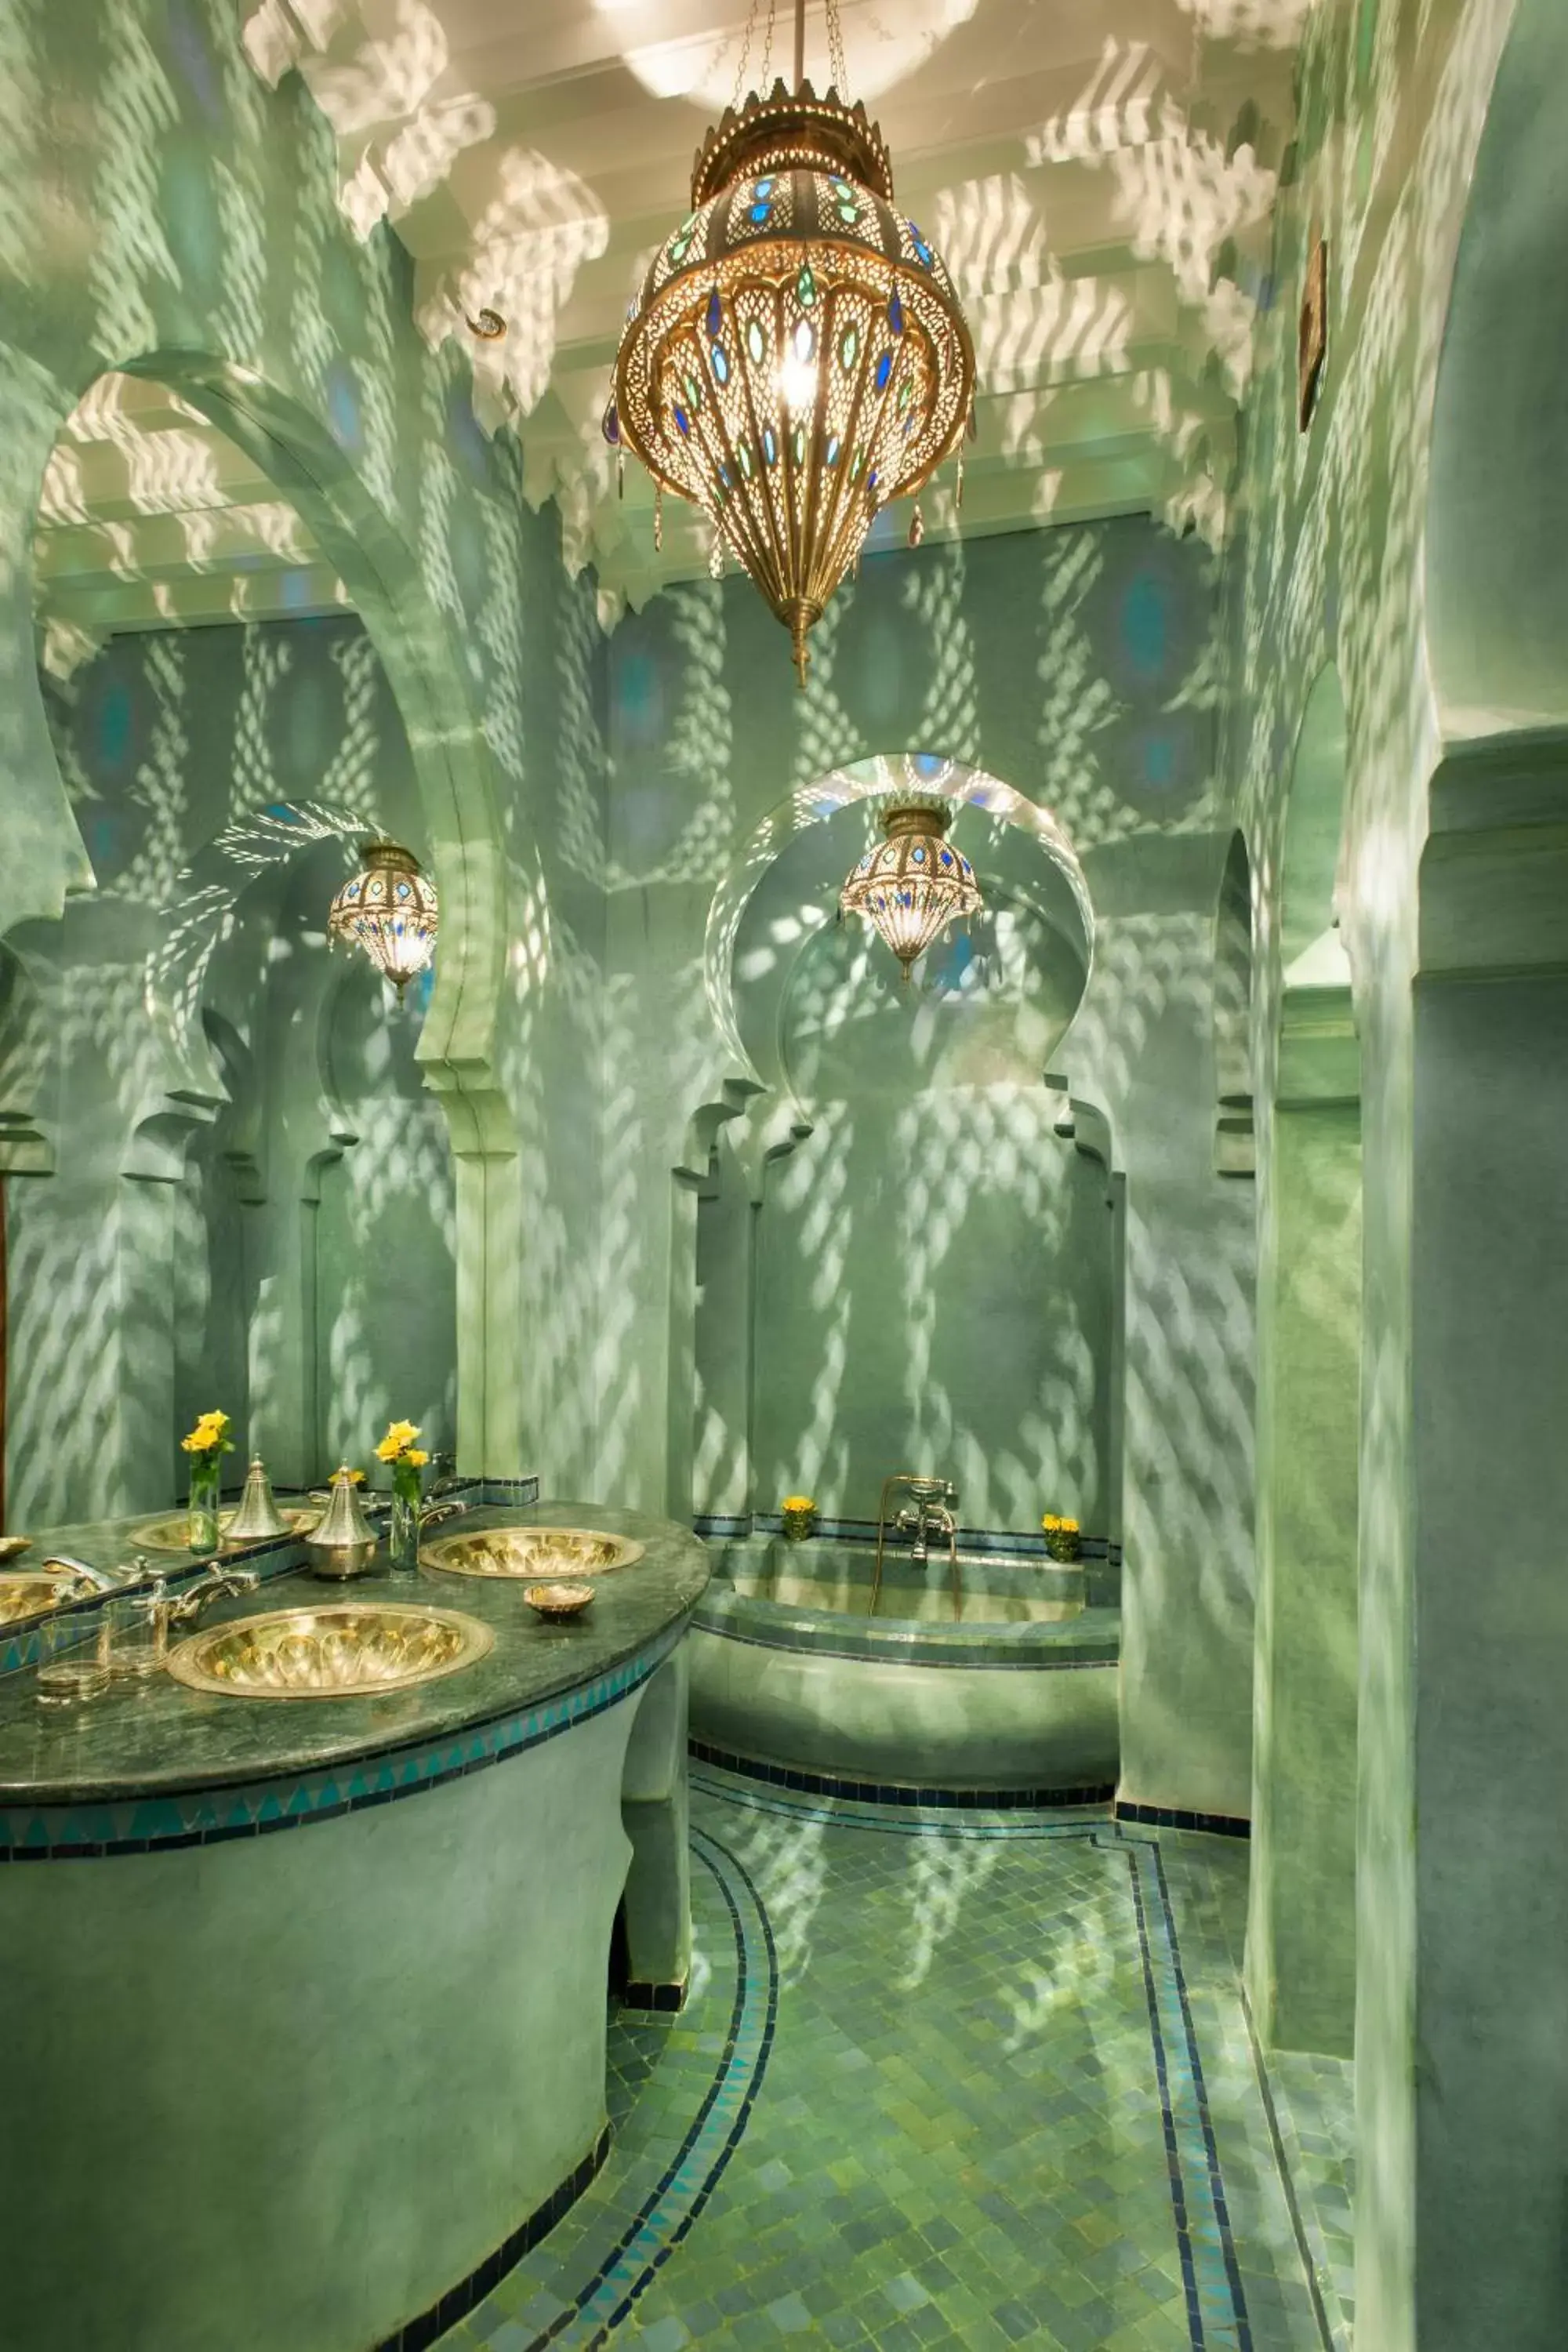 Bathroom in La Sultana Marrakech